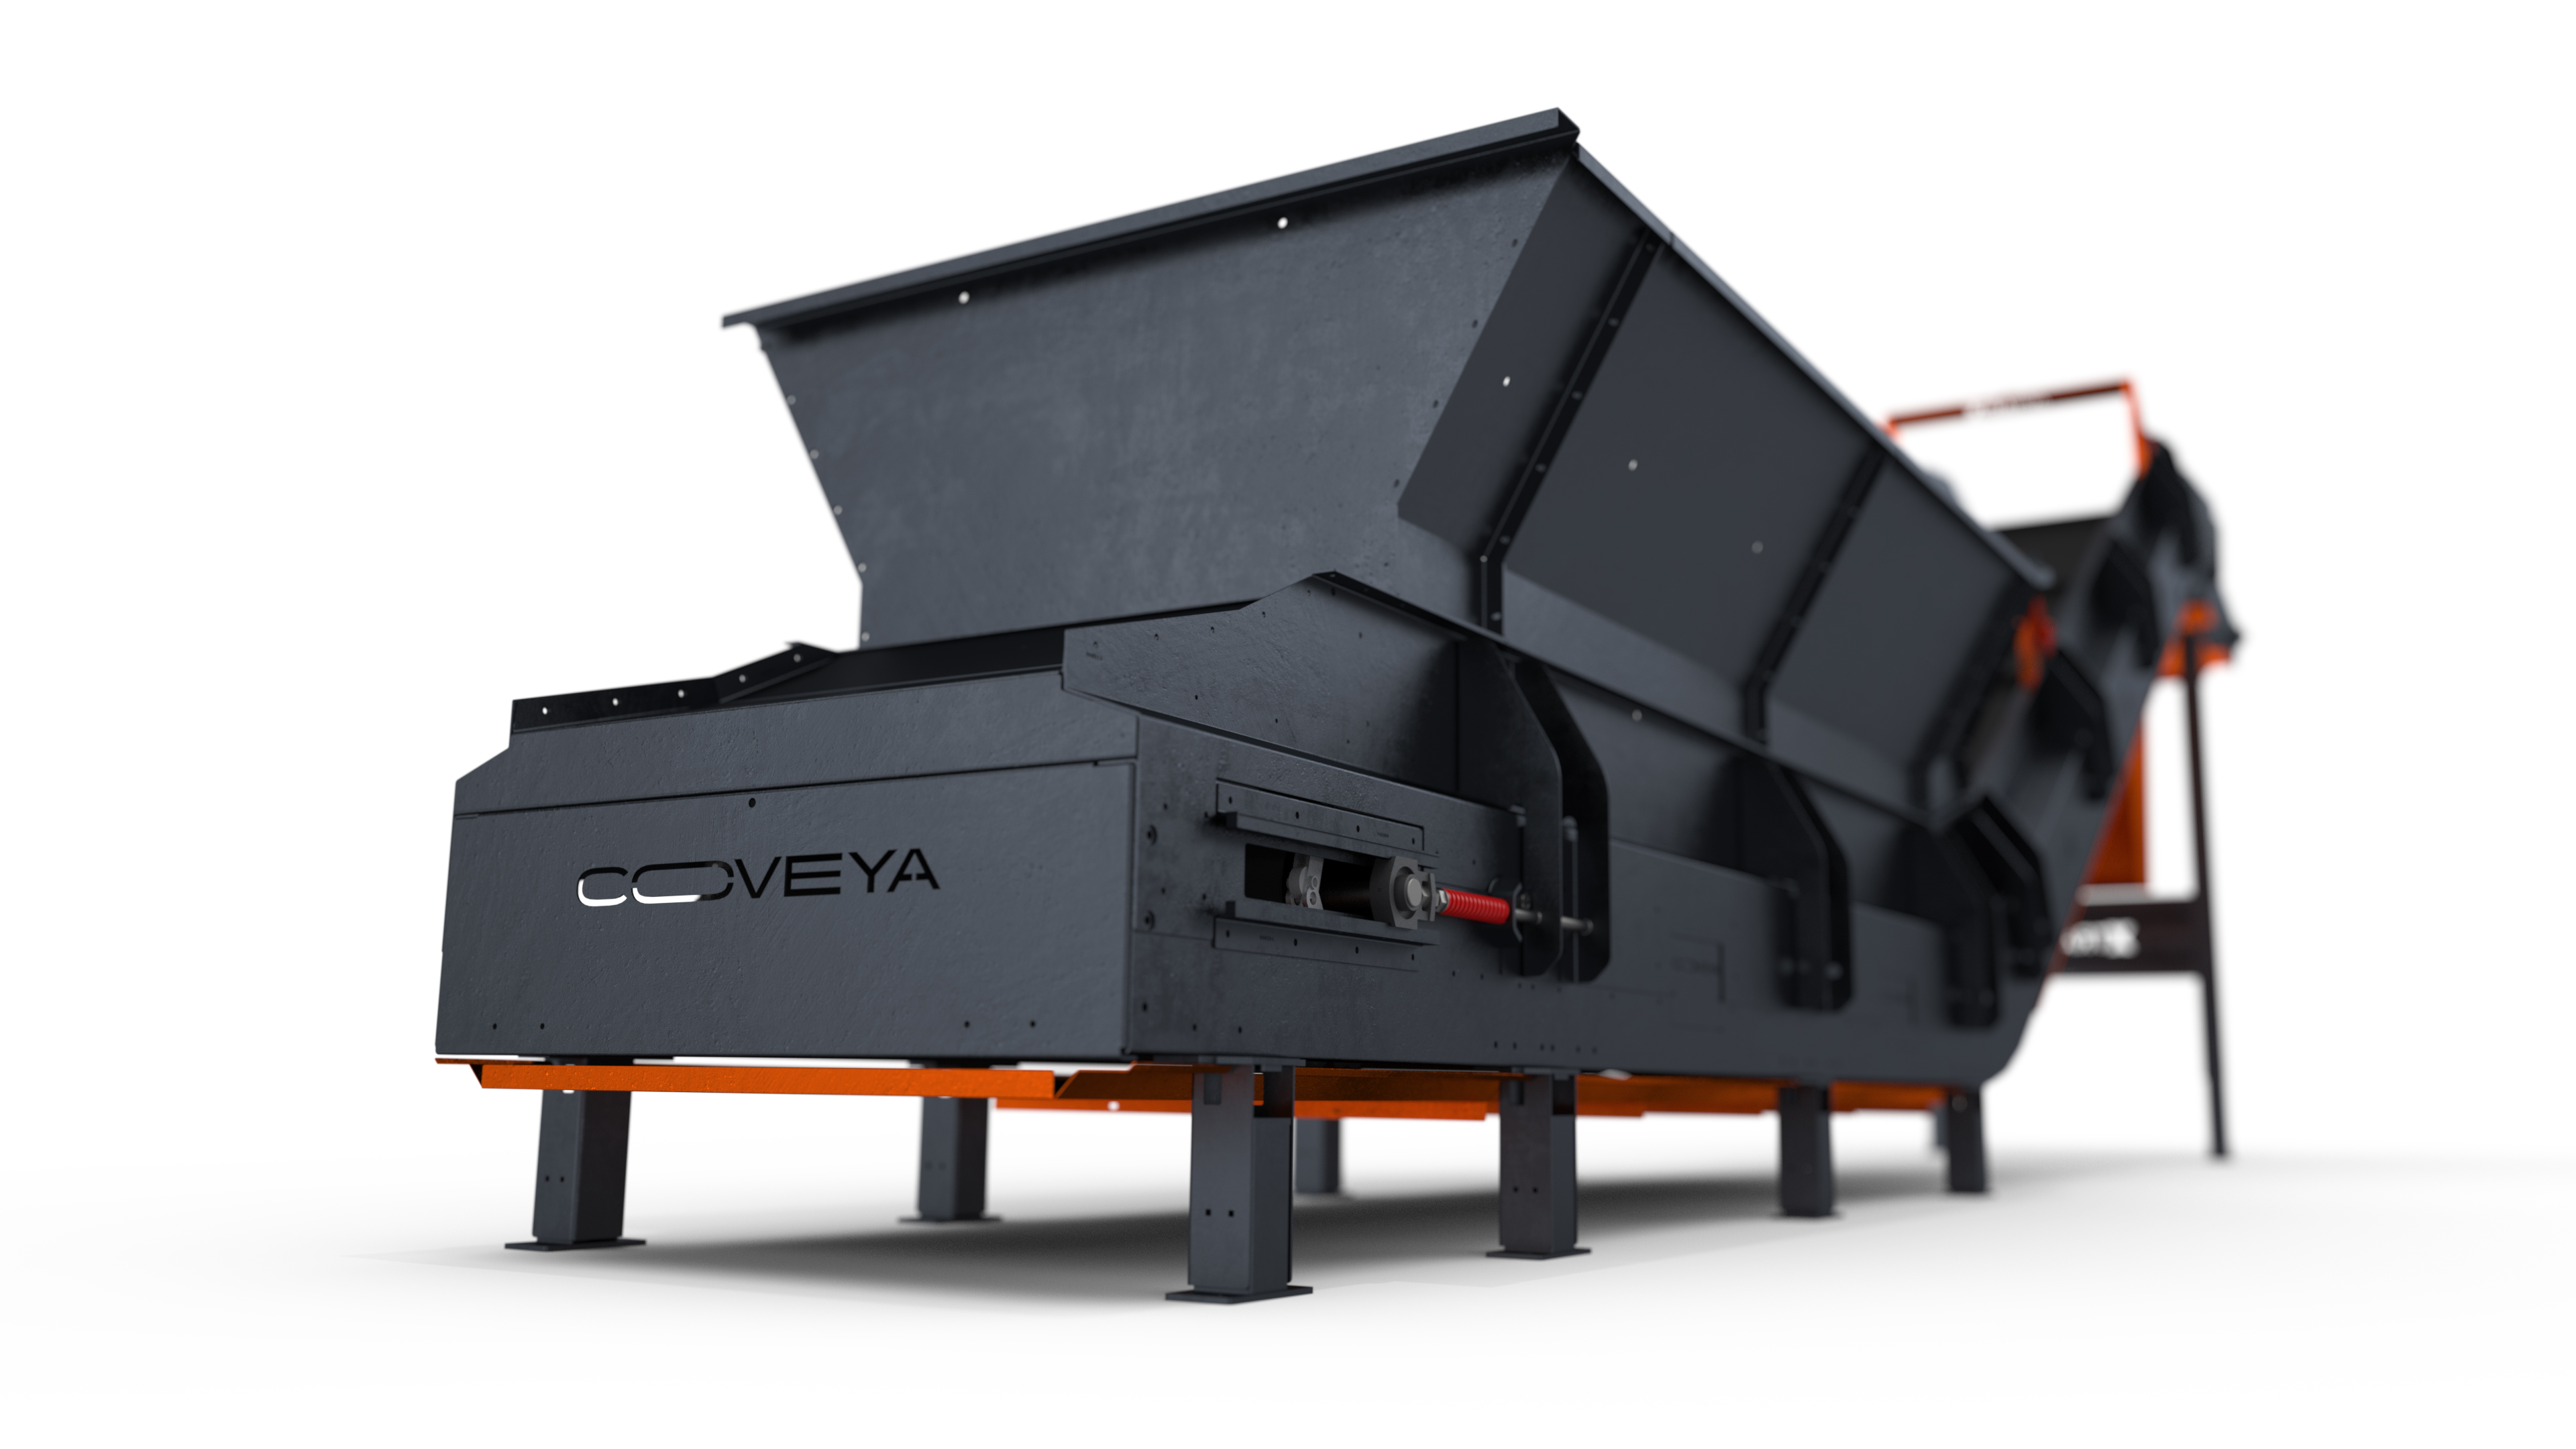 The XtraVeya. The Heavy-Duty, Chain Driven Conveyor